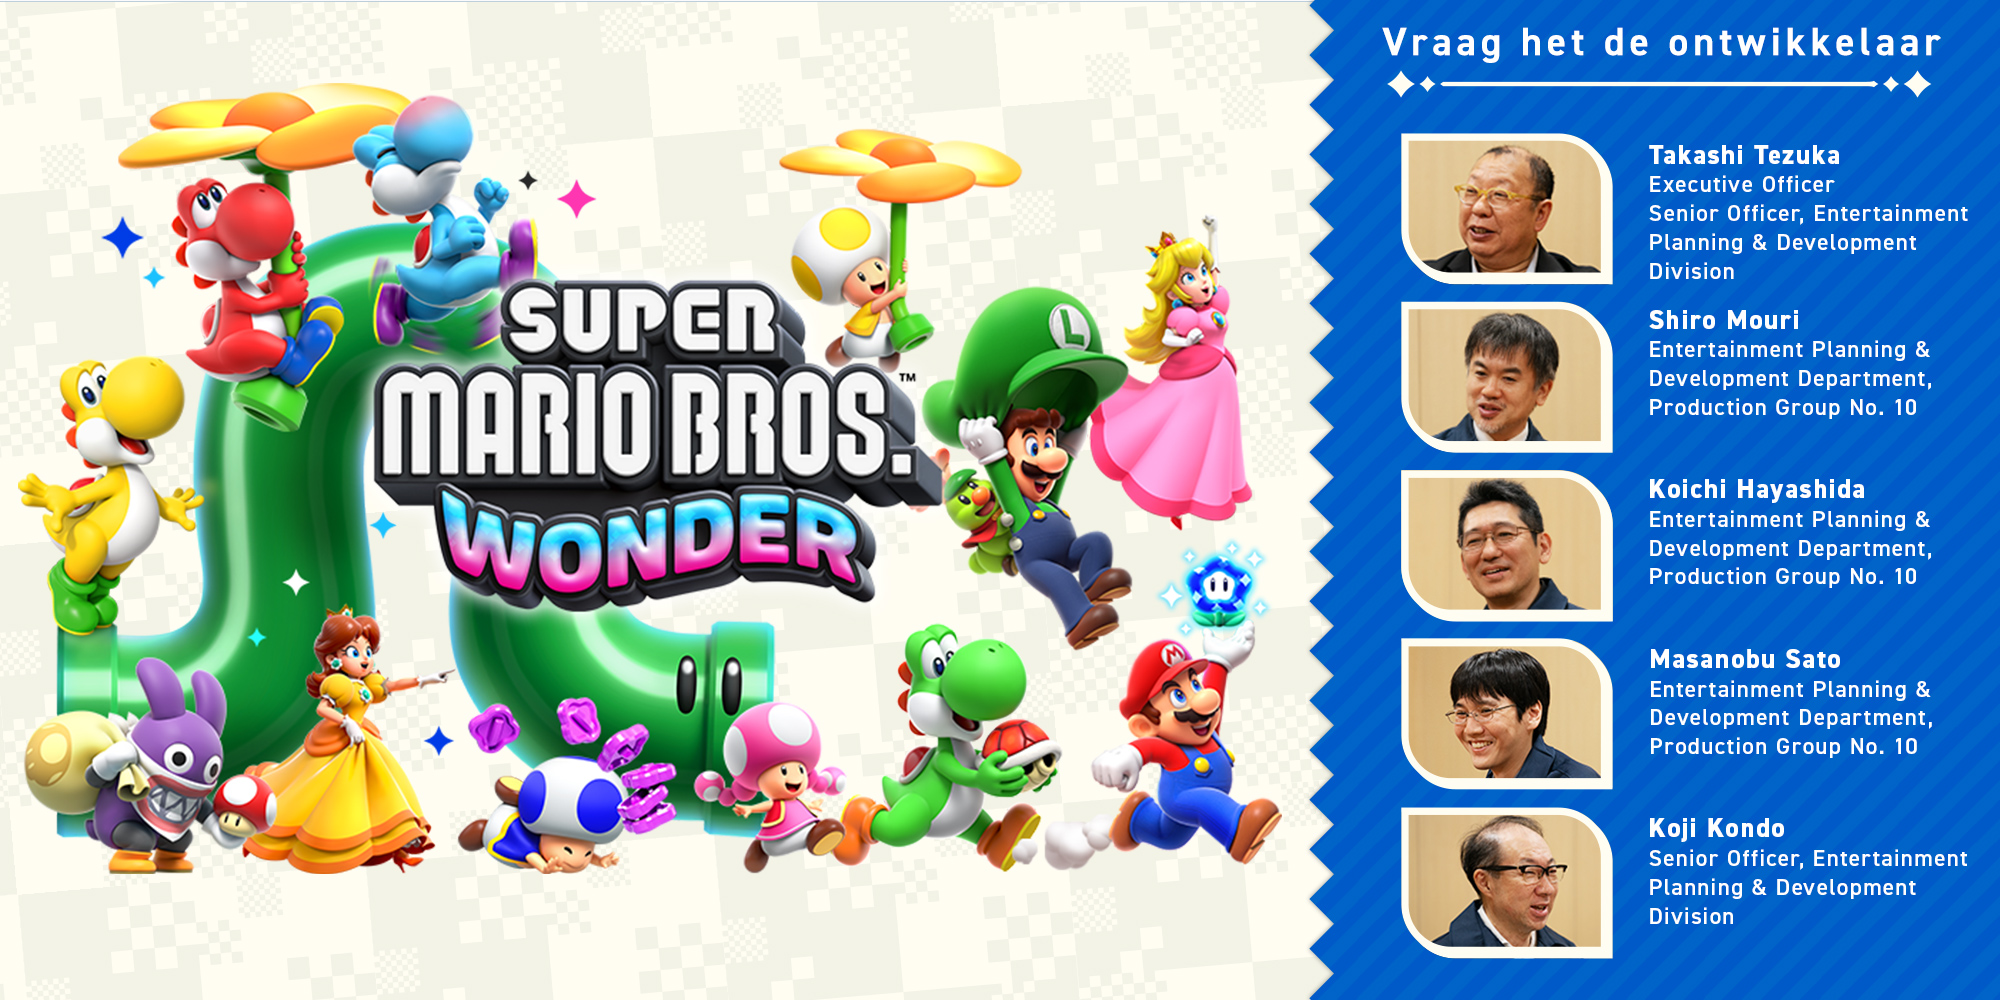 Vraag het de ontwikkelaar Vol. 11, Super Mario Bros. Wonder – Hoofdstuk 3